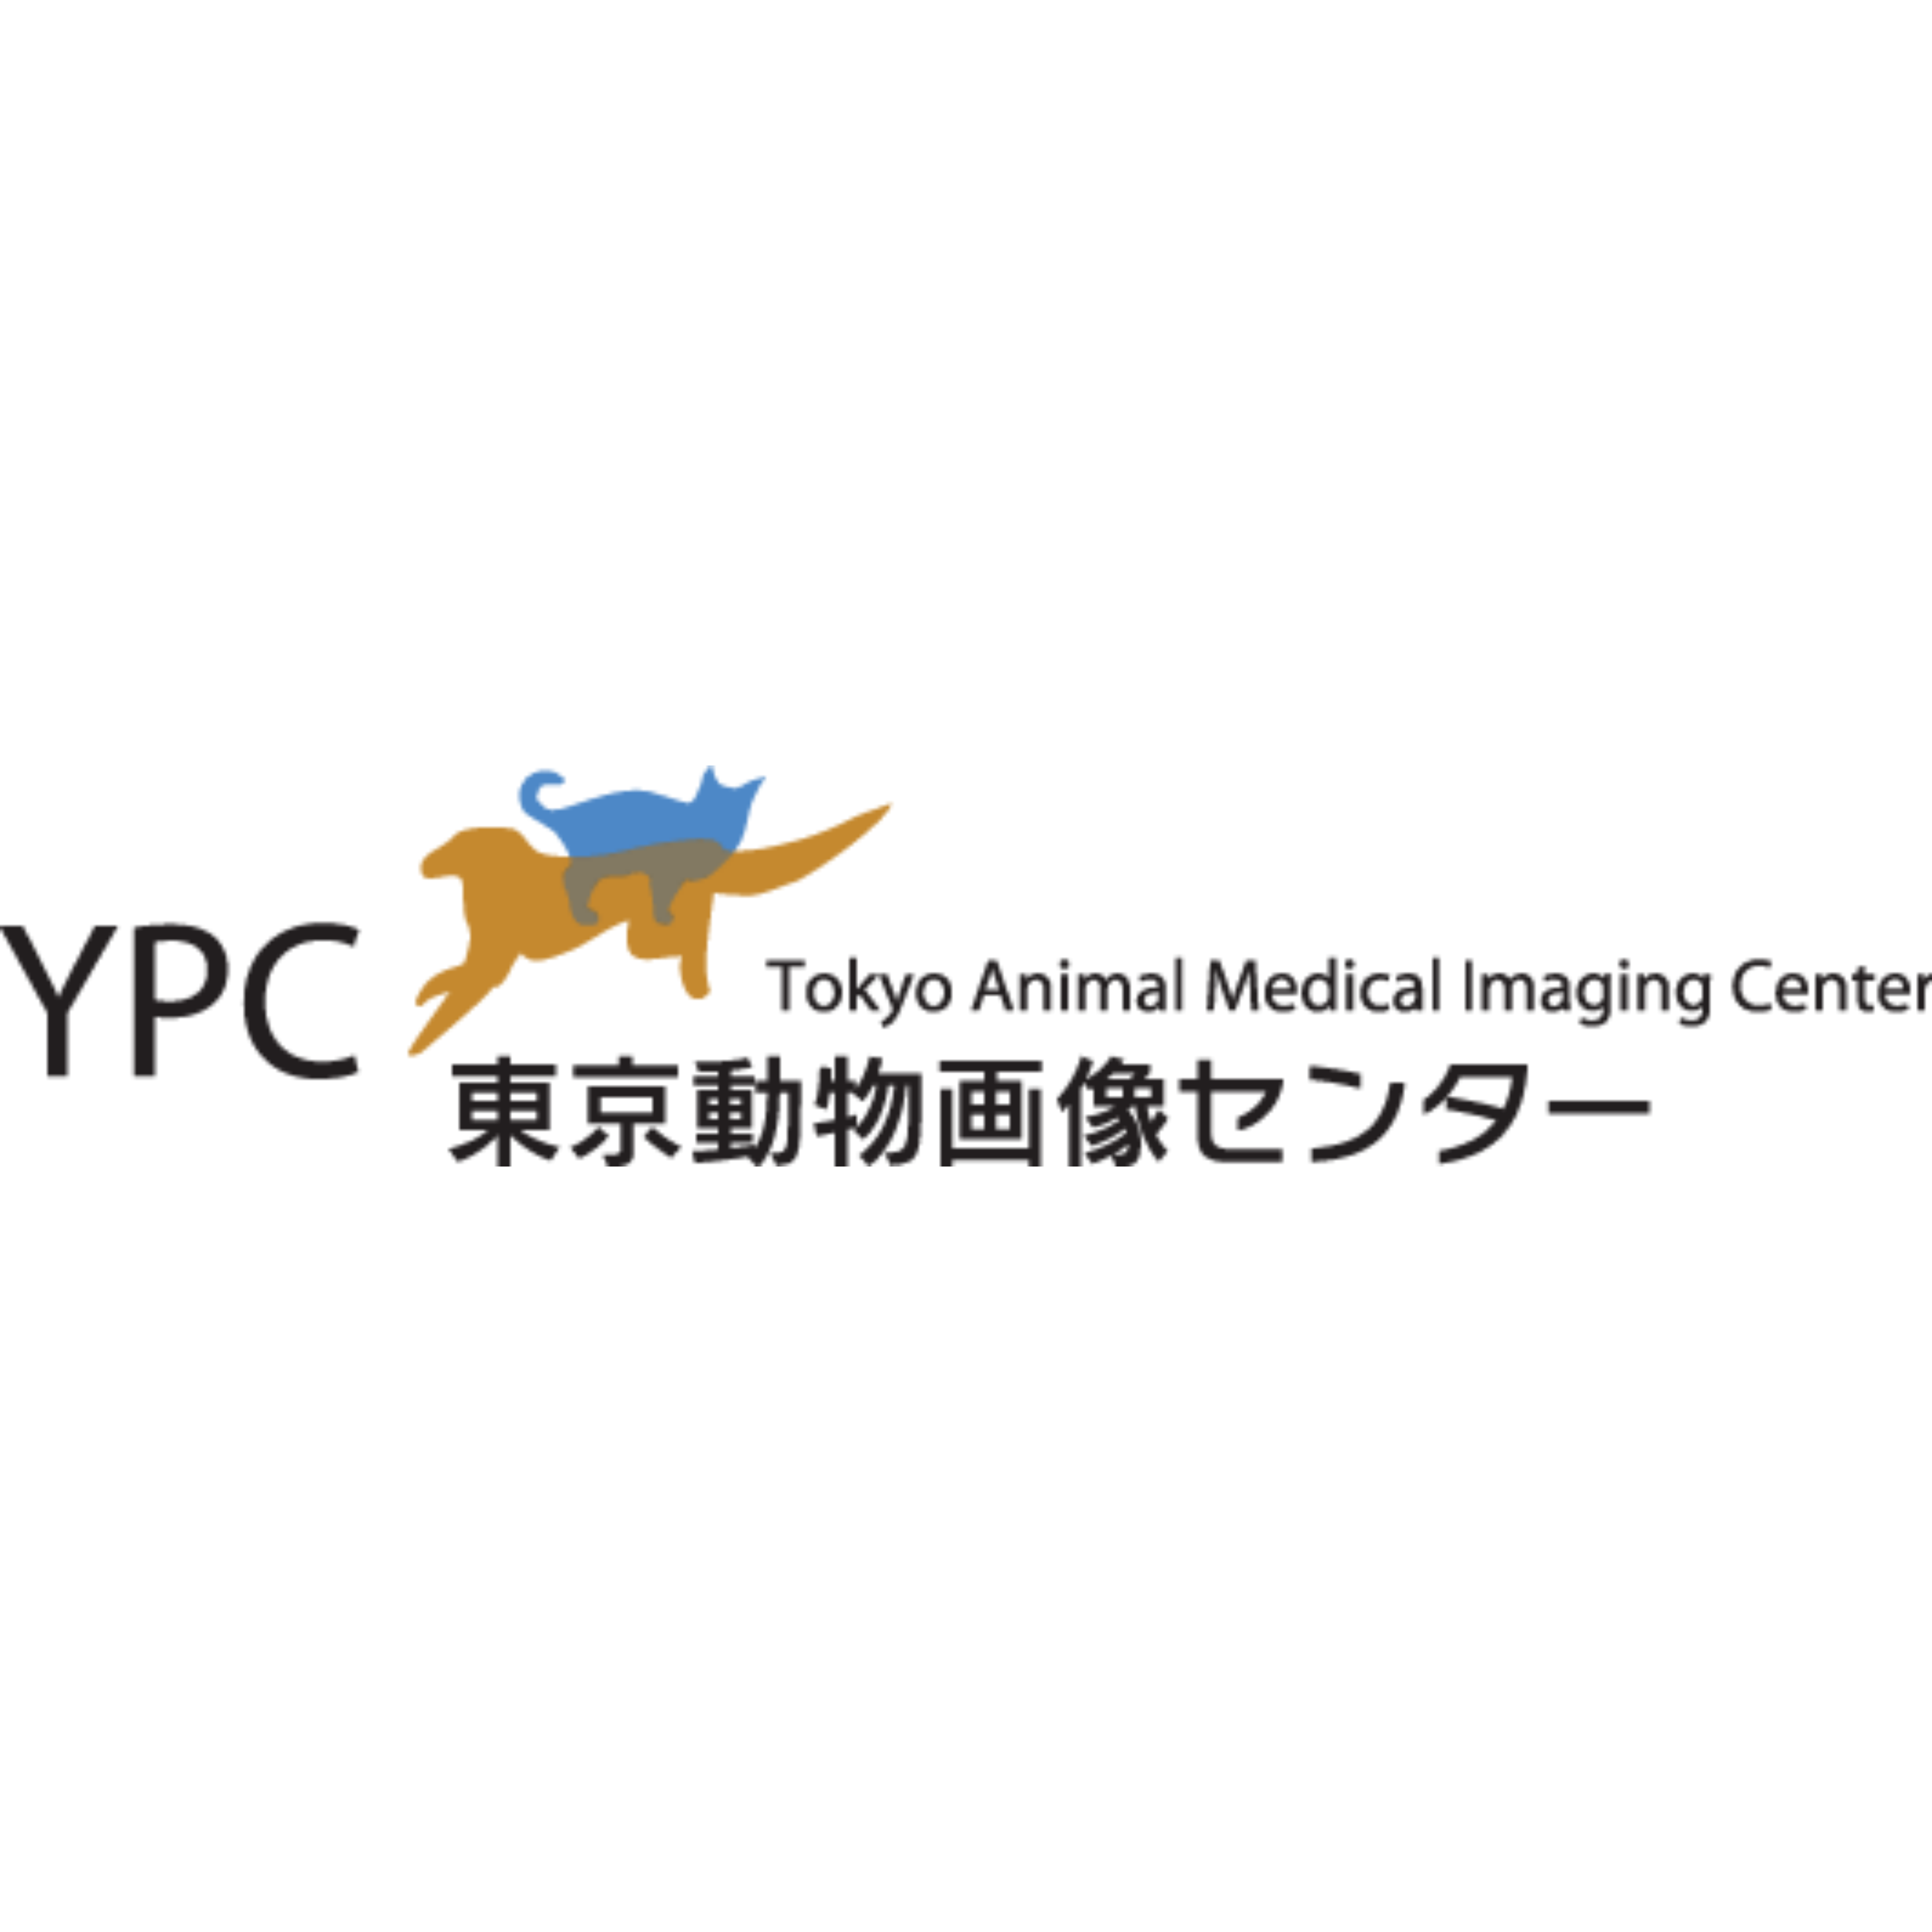 YPC東京動物画像センター Logo